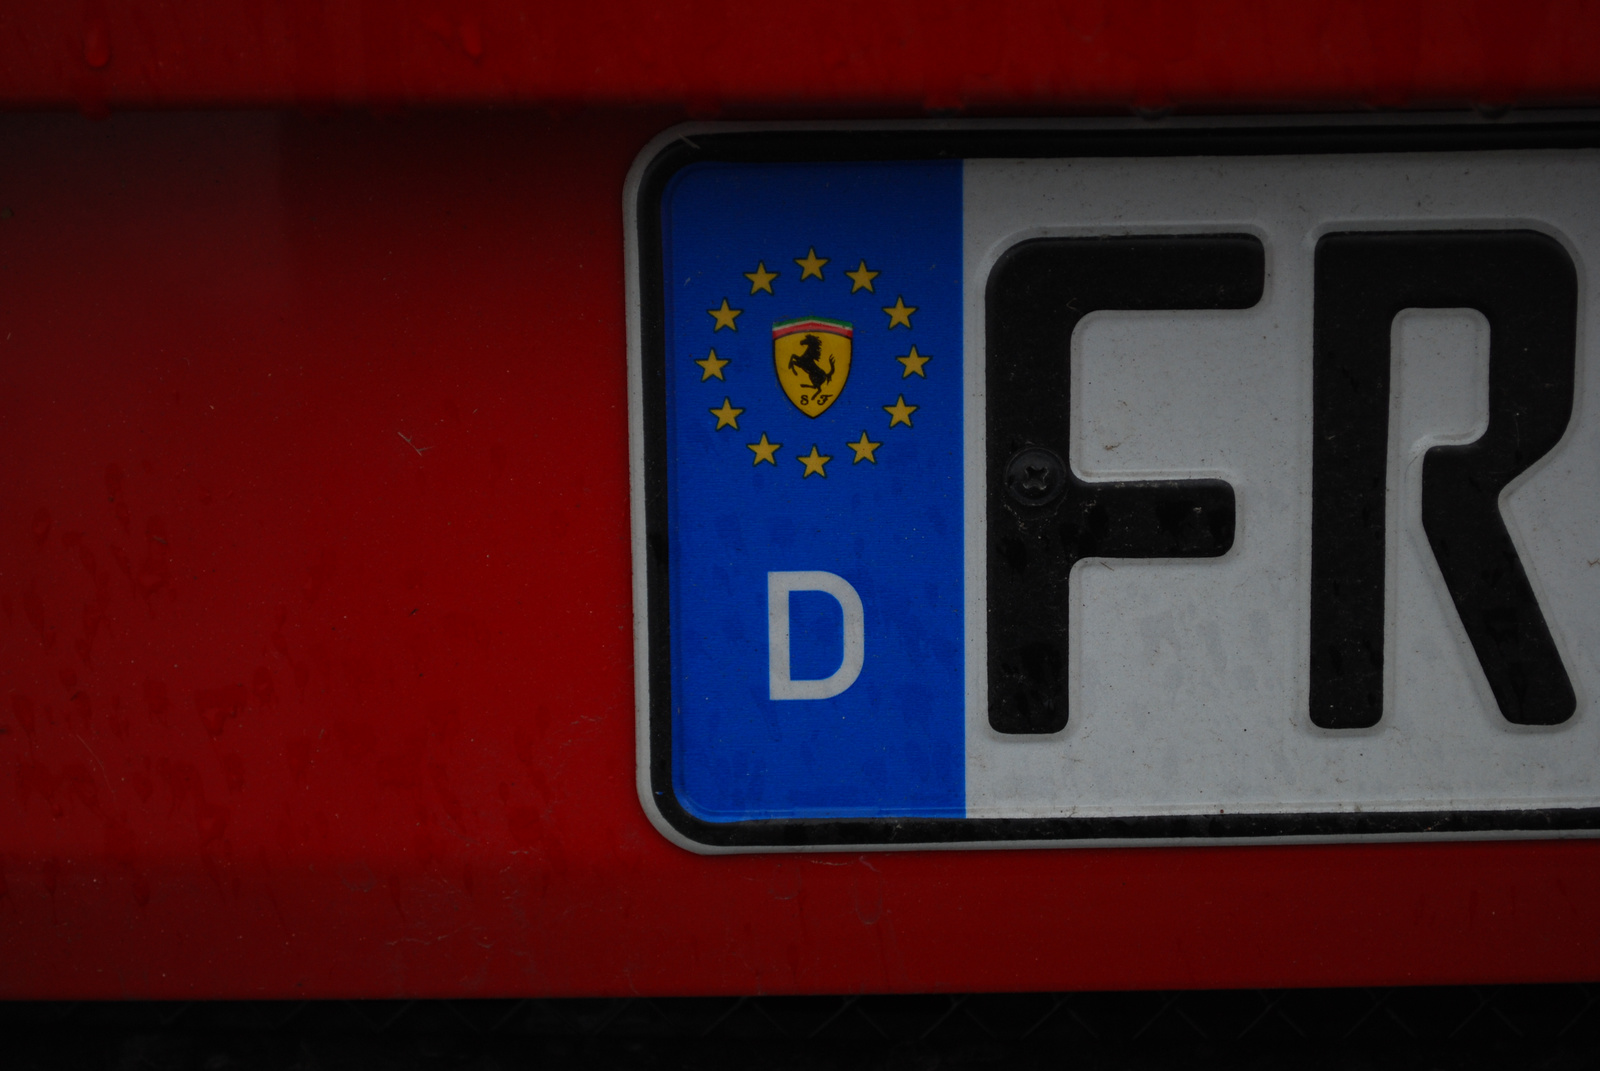 Ferrari Unió :)